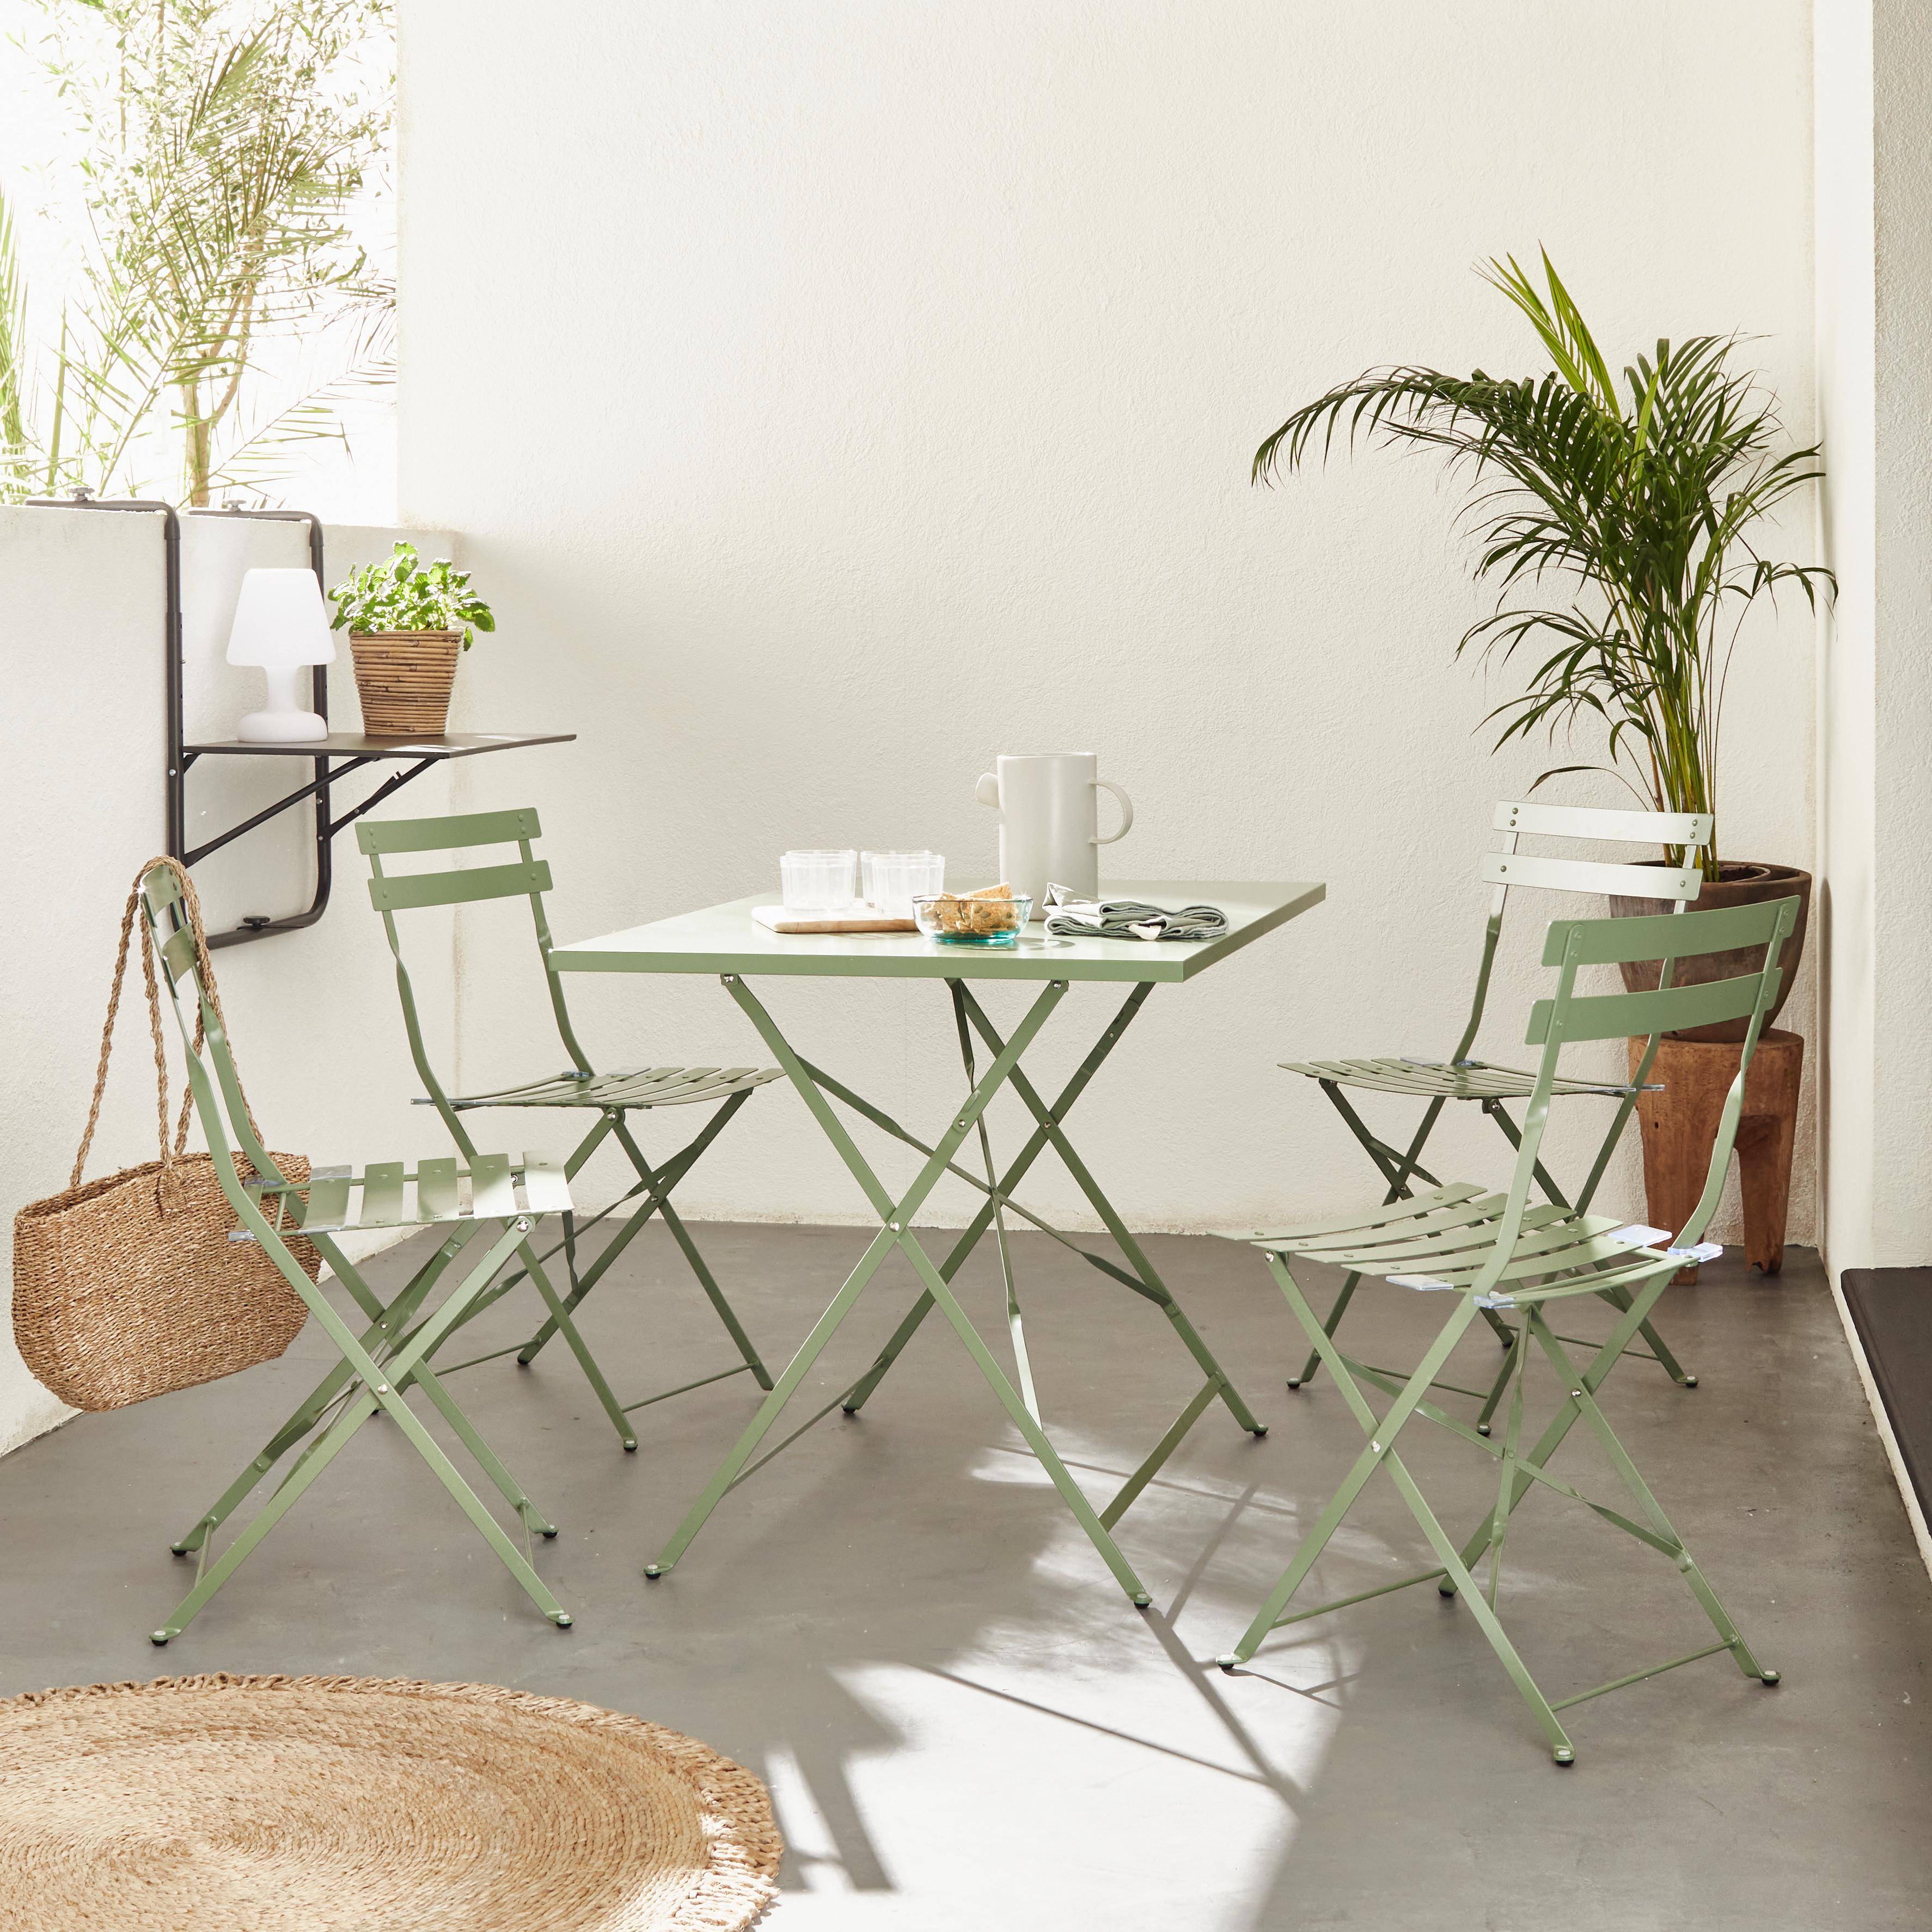 Tavolo da giardino, bar bistrot, pieghevole - modello: Emilia, rettangolare, colore: Grigio verde - Tavolo, dimensioni: 110x70cm, con quattro sedie pieghevoli, acciaio termolaccato Photo1